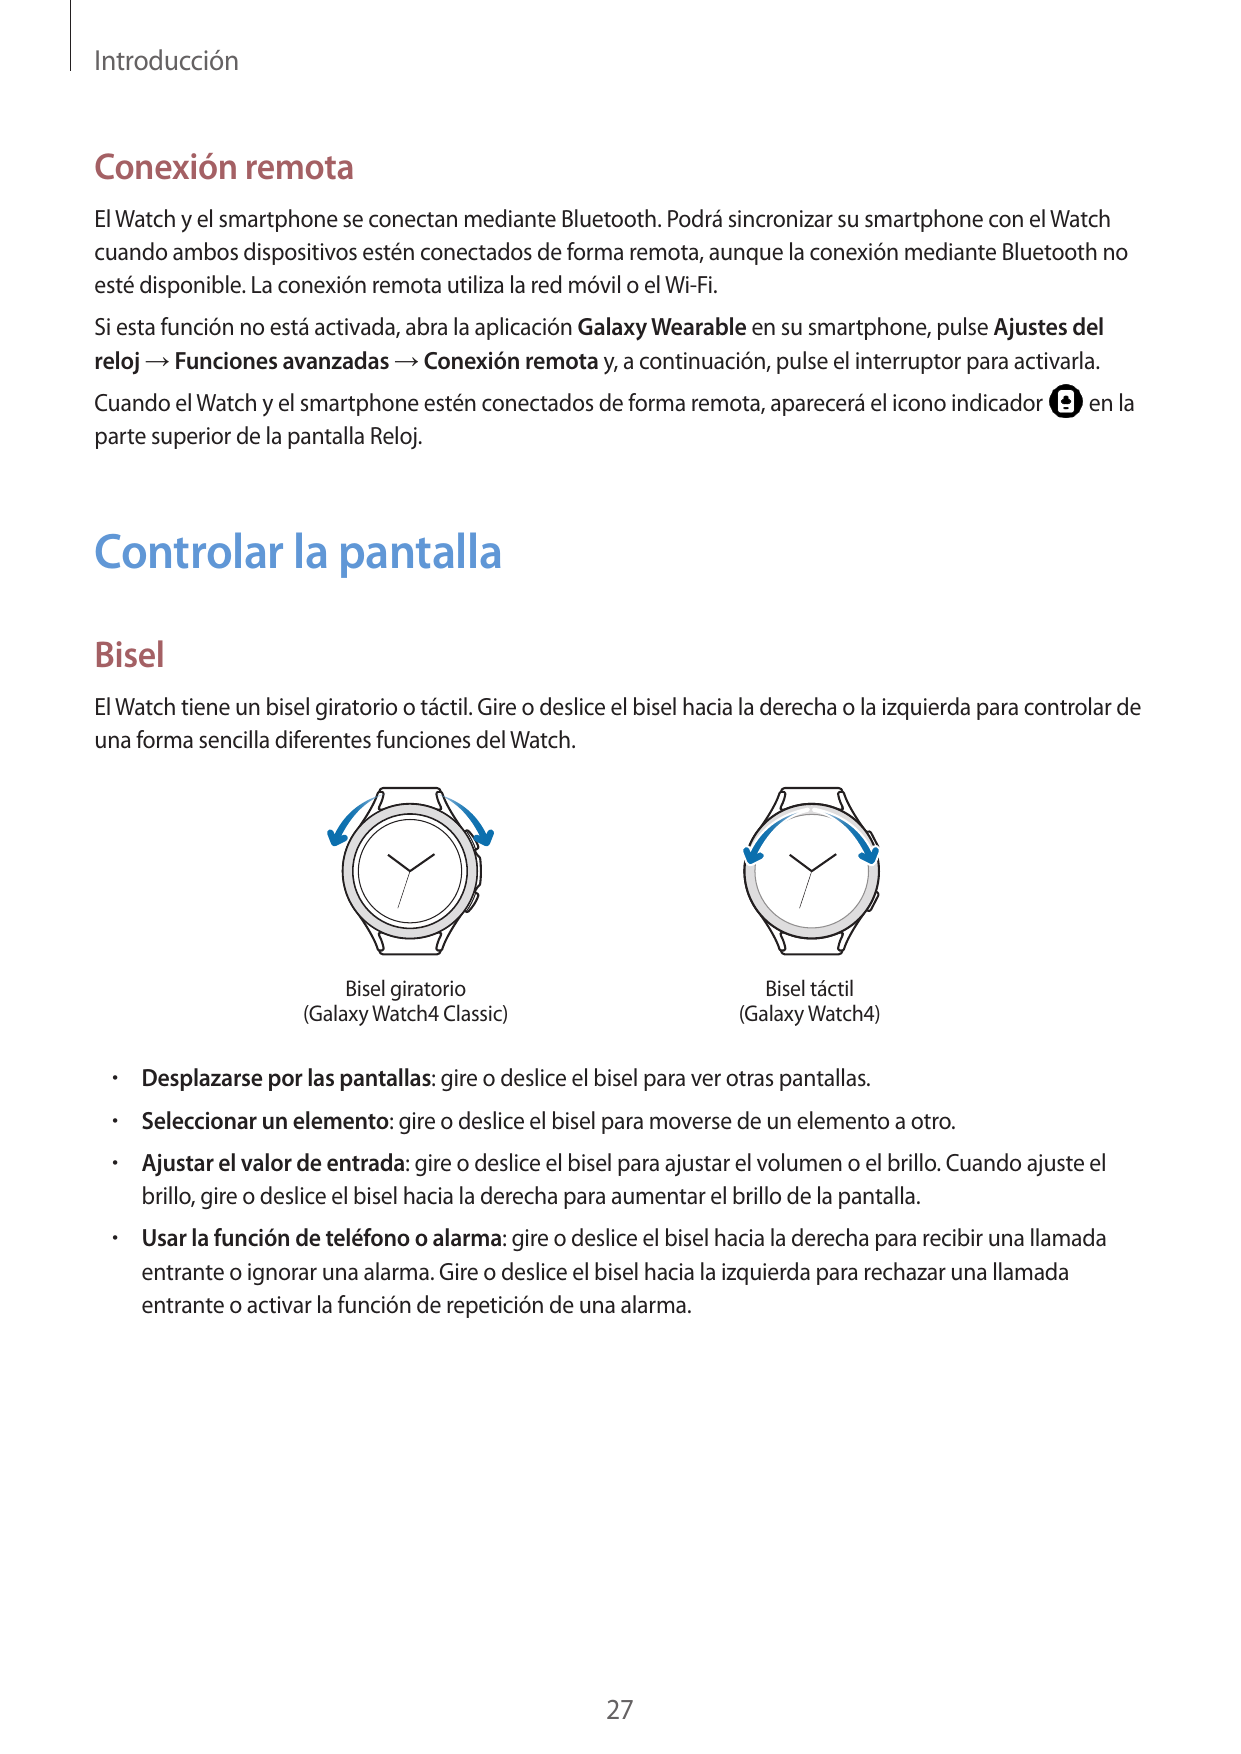 IntroducciónConexión remotaEl Watch y el smartphone se conectan mediante Bluetooth. Podrá sincronizar su smartphone con el Watch